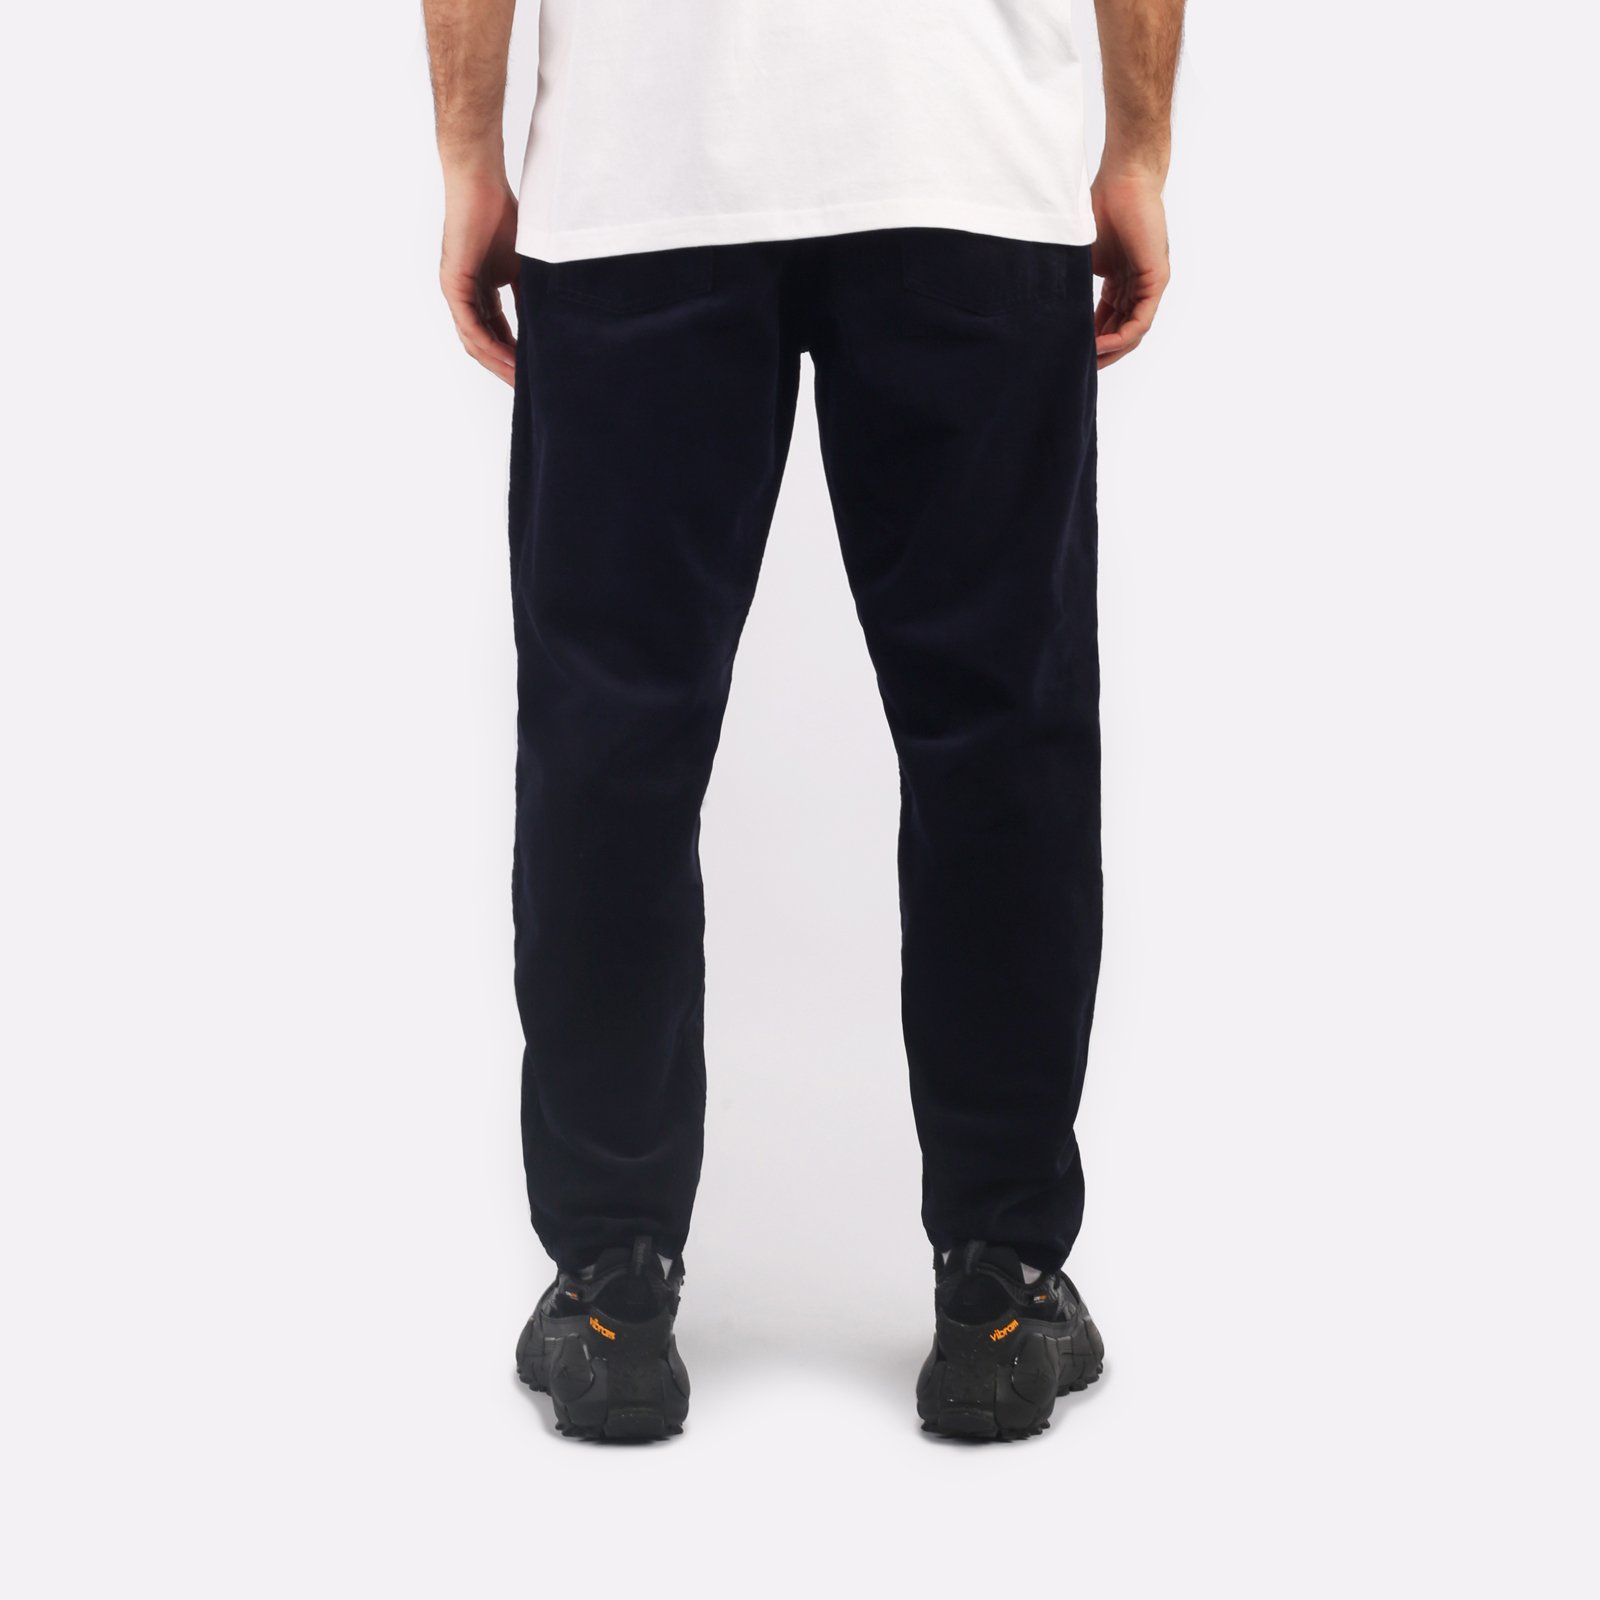 мужские синие брюки Carhartt WIP Newel Pant I031456-dark_navy - цена, описание, фото 2